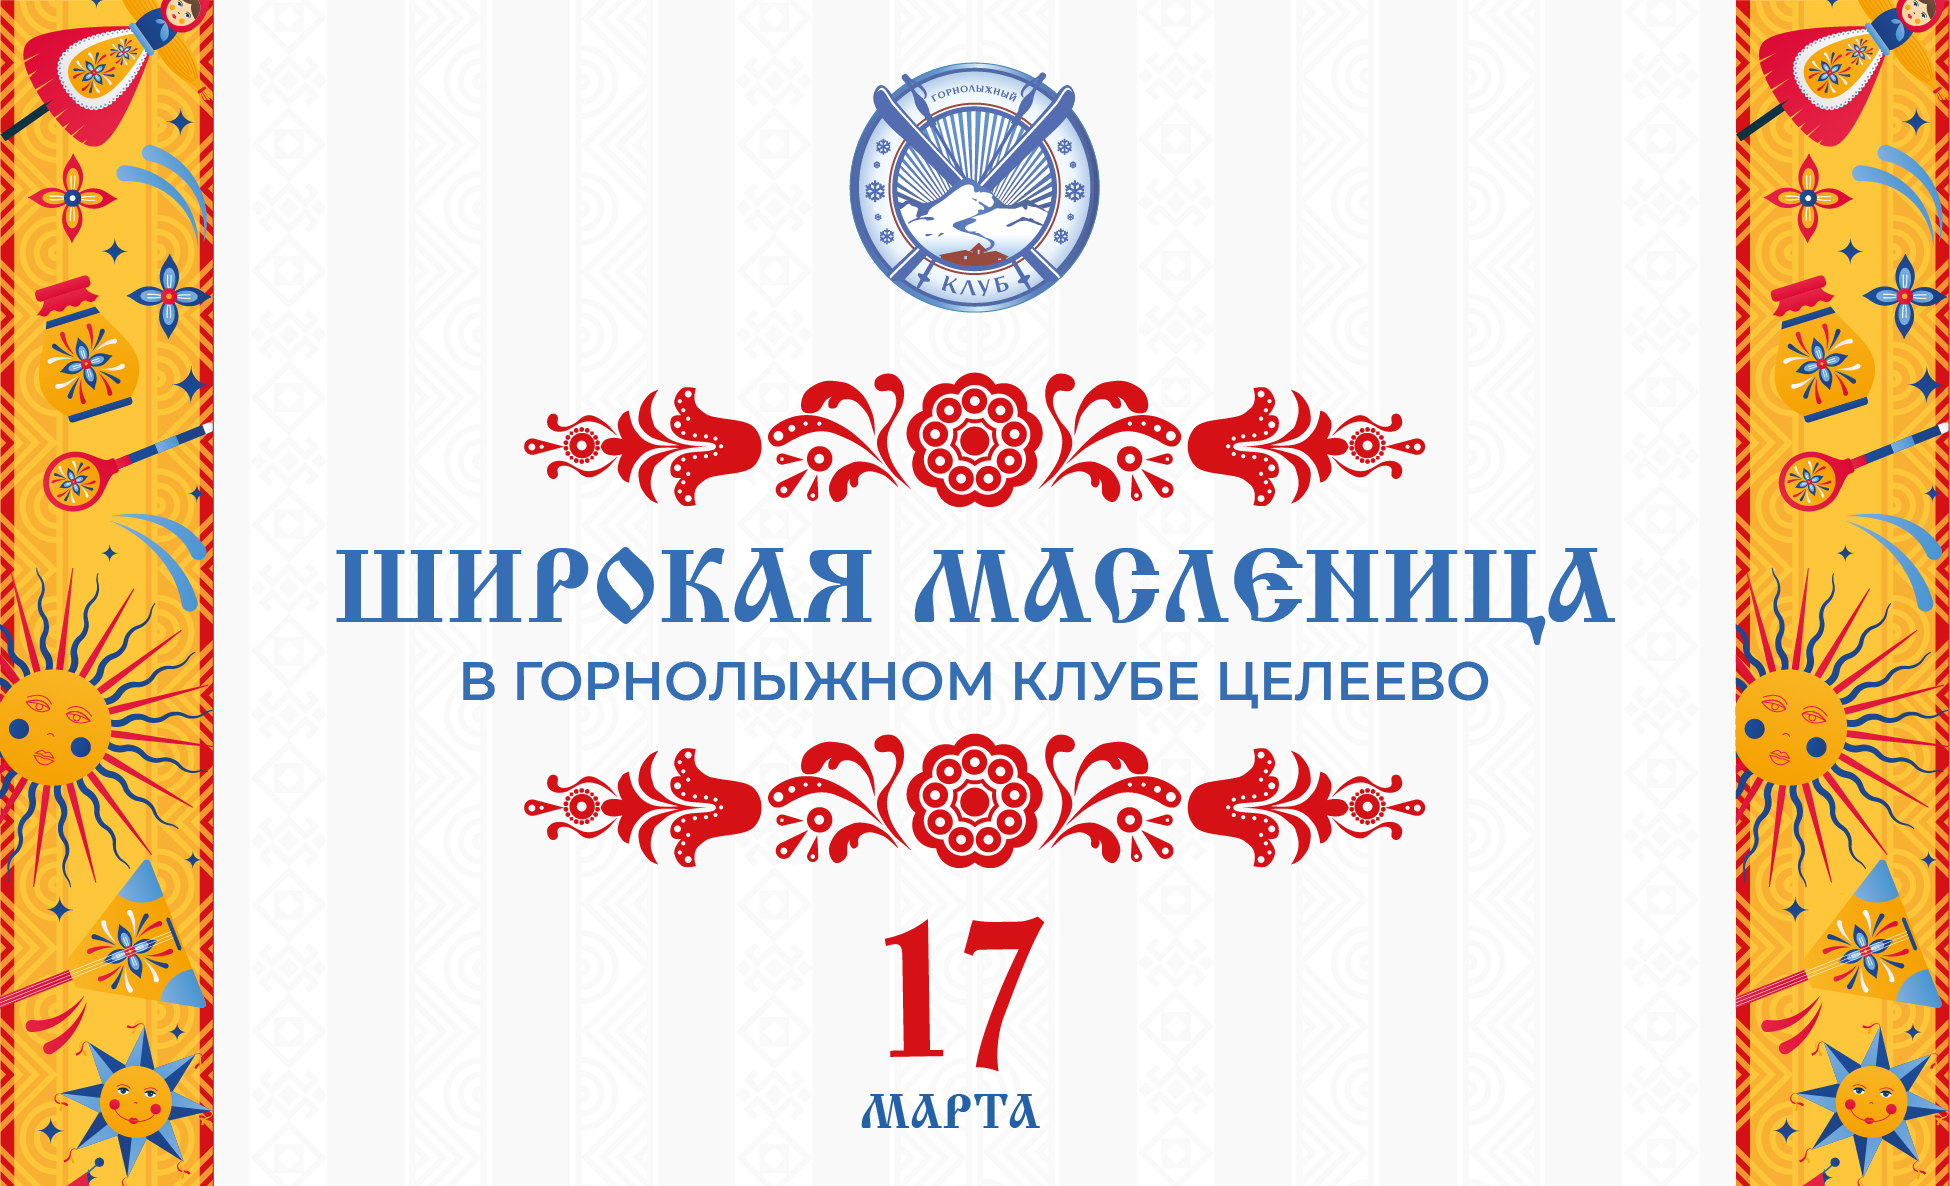 Широкая масленица в Целеево пройдет 17 марта